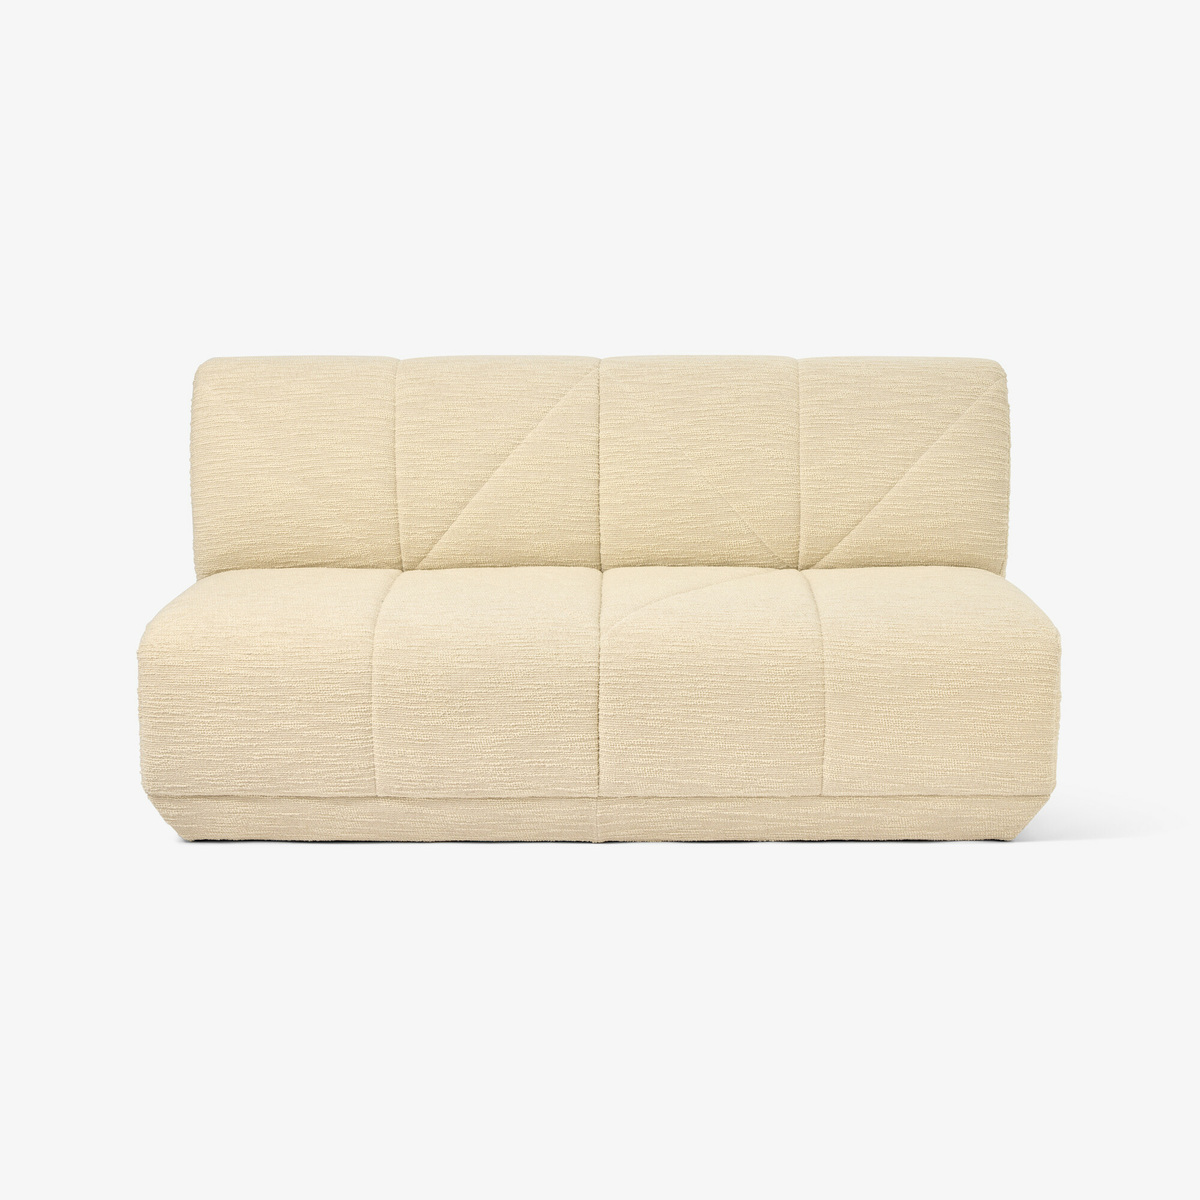 Chill Sofa, Off-White - L164 x H83 x P98 cm - image 1